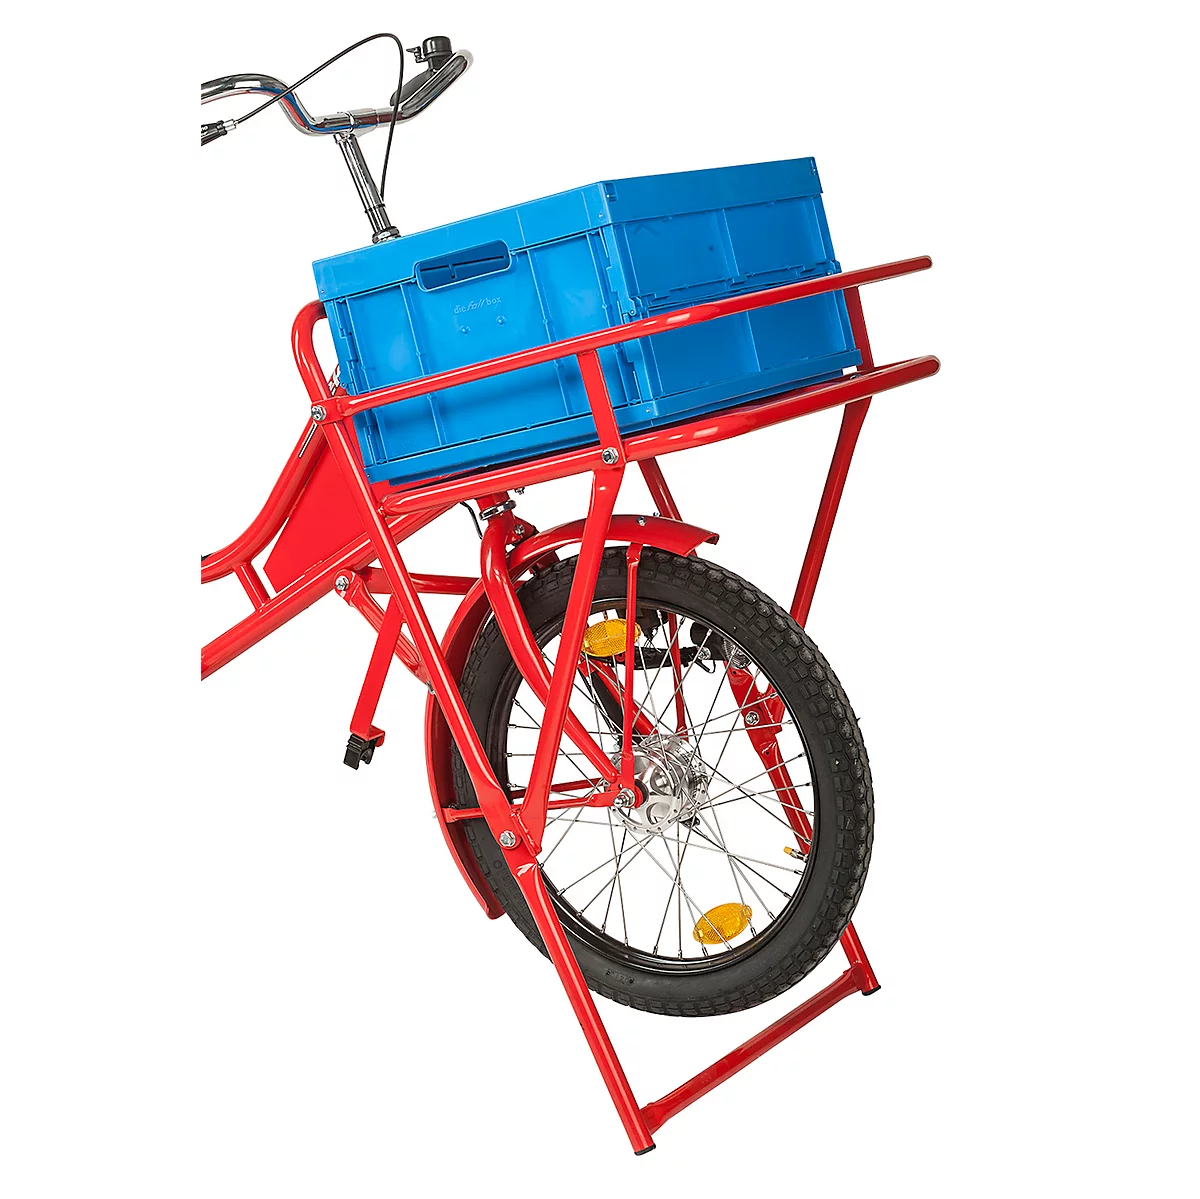 Caja plegable para bicicletas de transporte y carga, de plástico, se pliega para ahorrar espacio